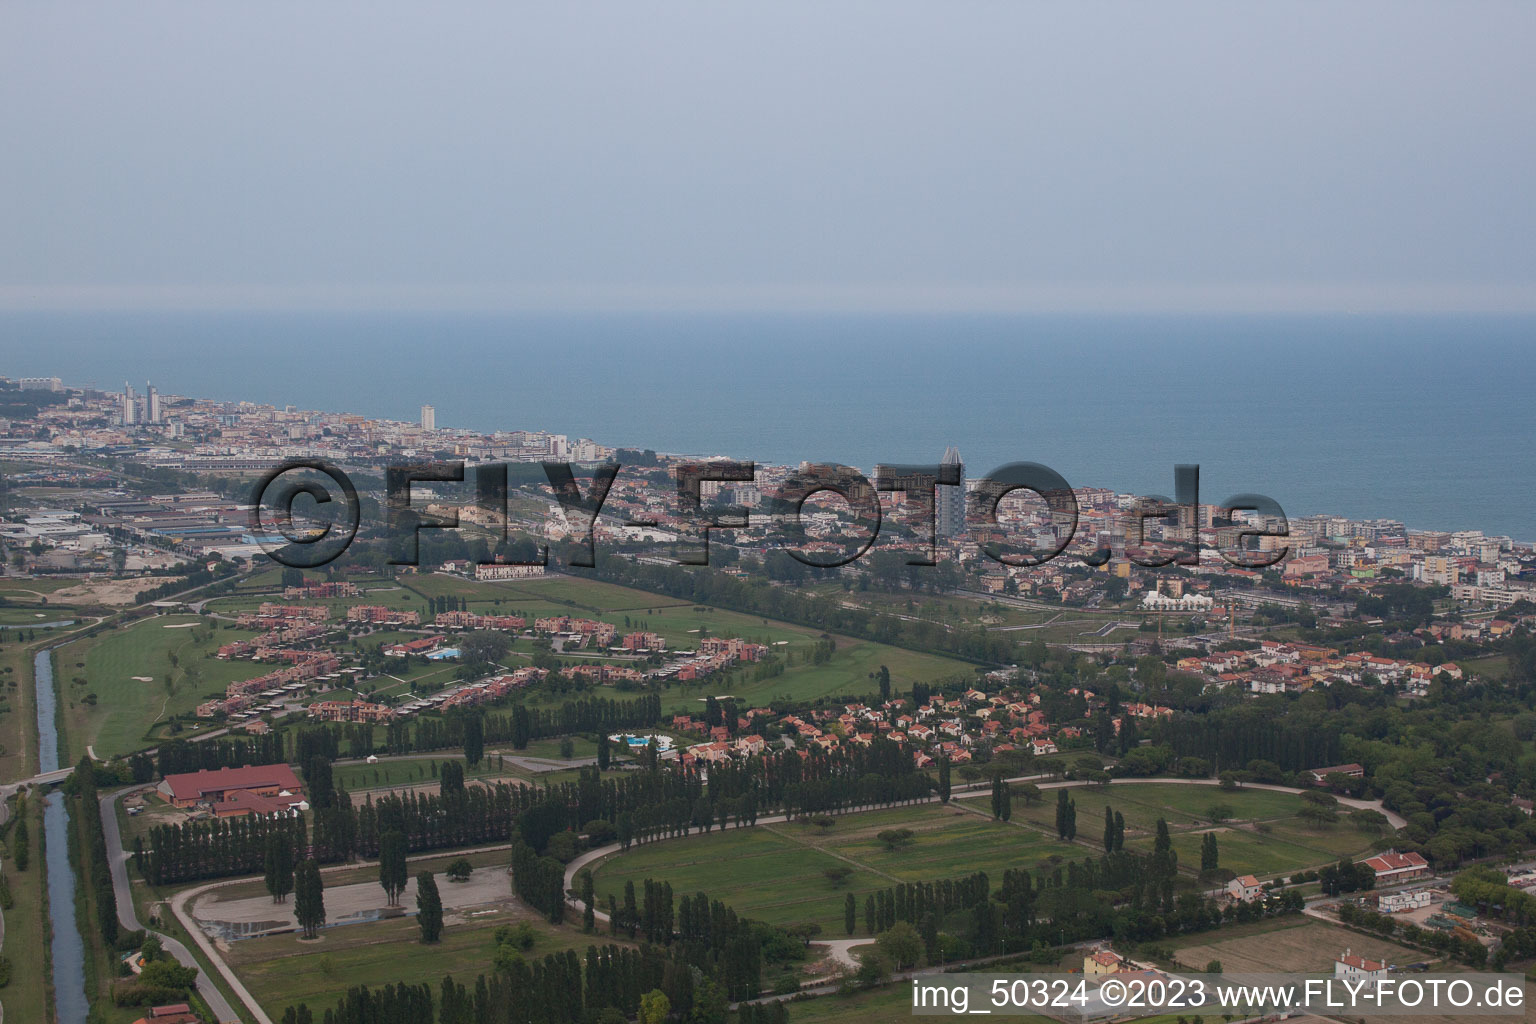 Aerial photograpy of Lido di Jesolo in the state Veneto, Italy